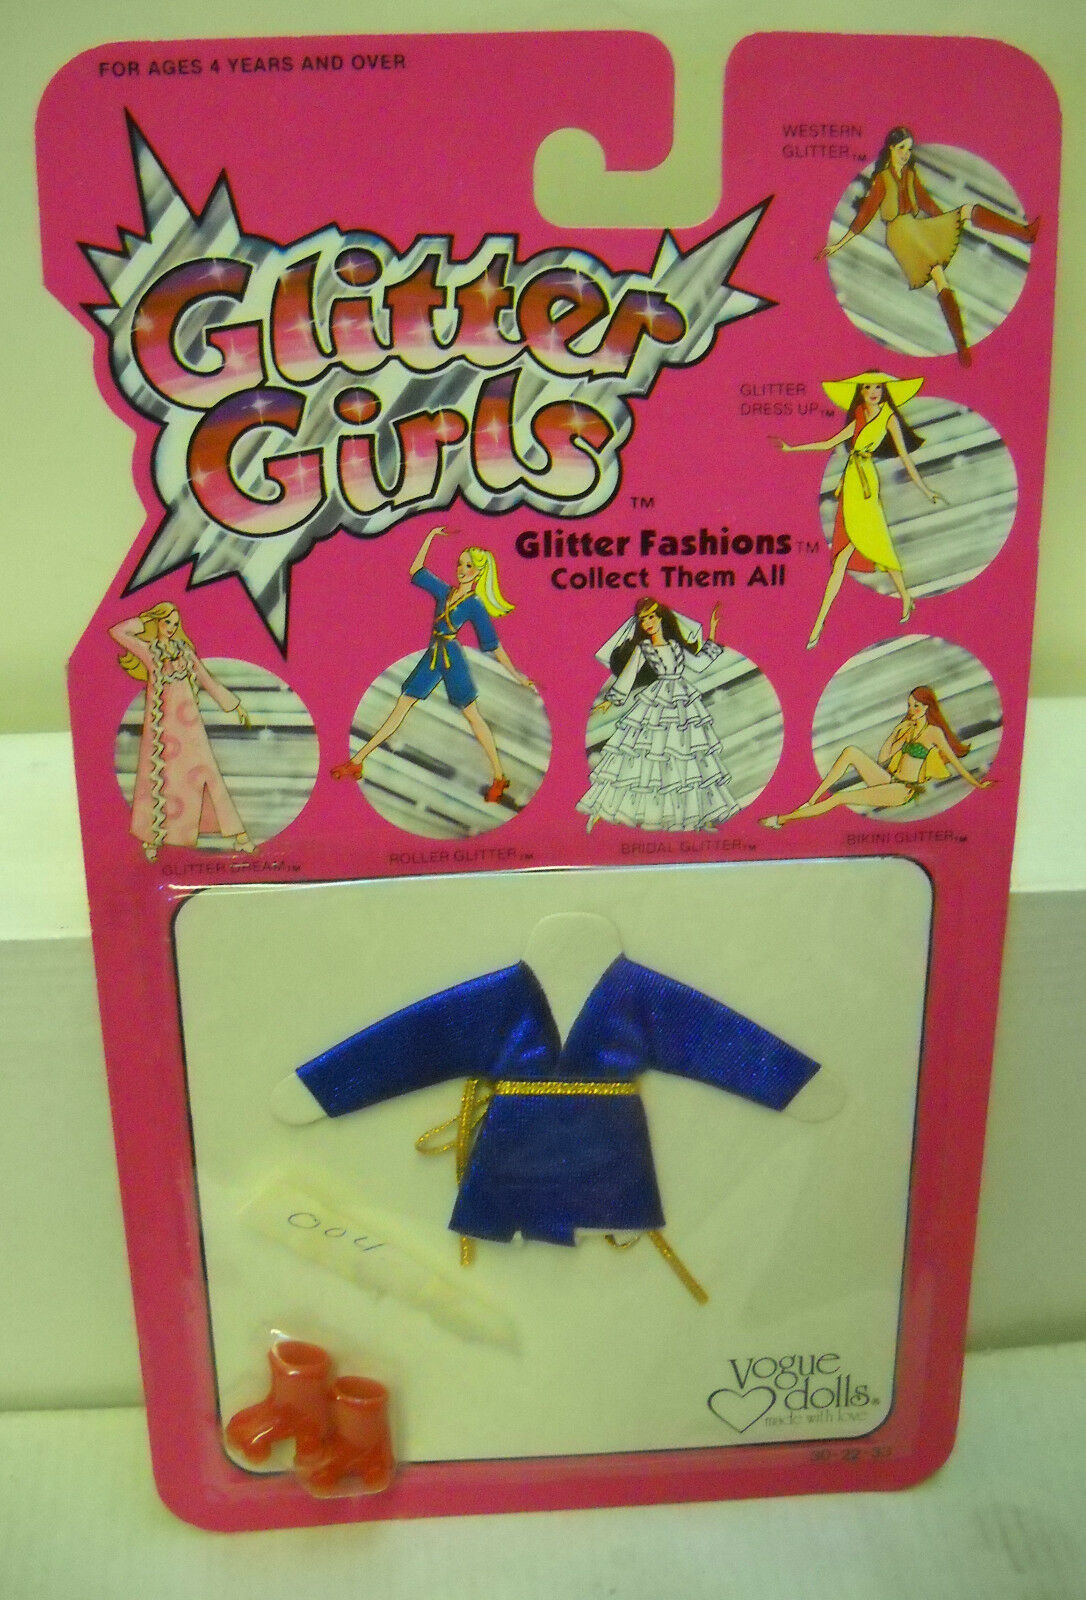 #1623 Nrfc Vintage Vogue Dolls Glitter Girls Roller Glitter Fashion